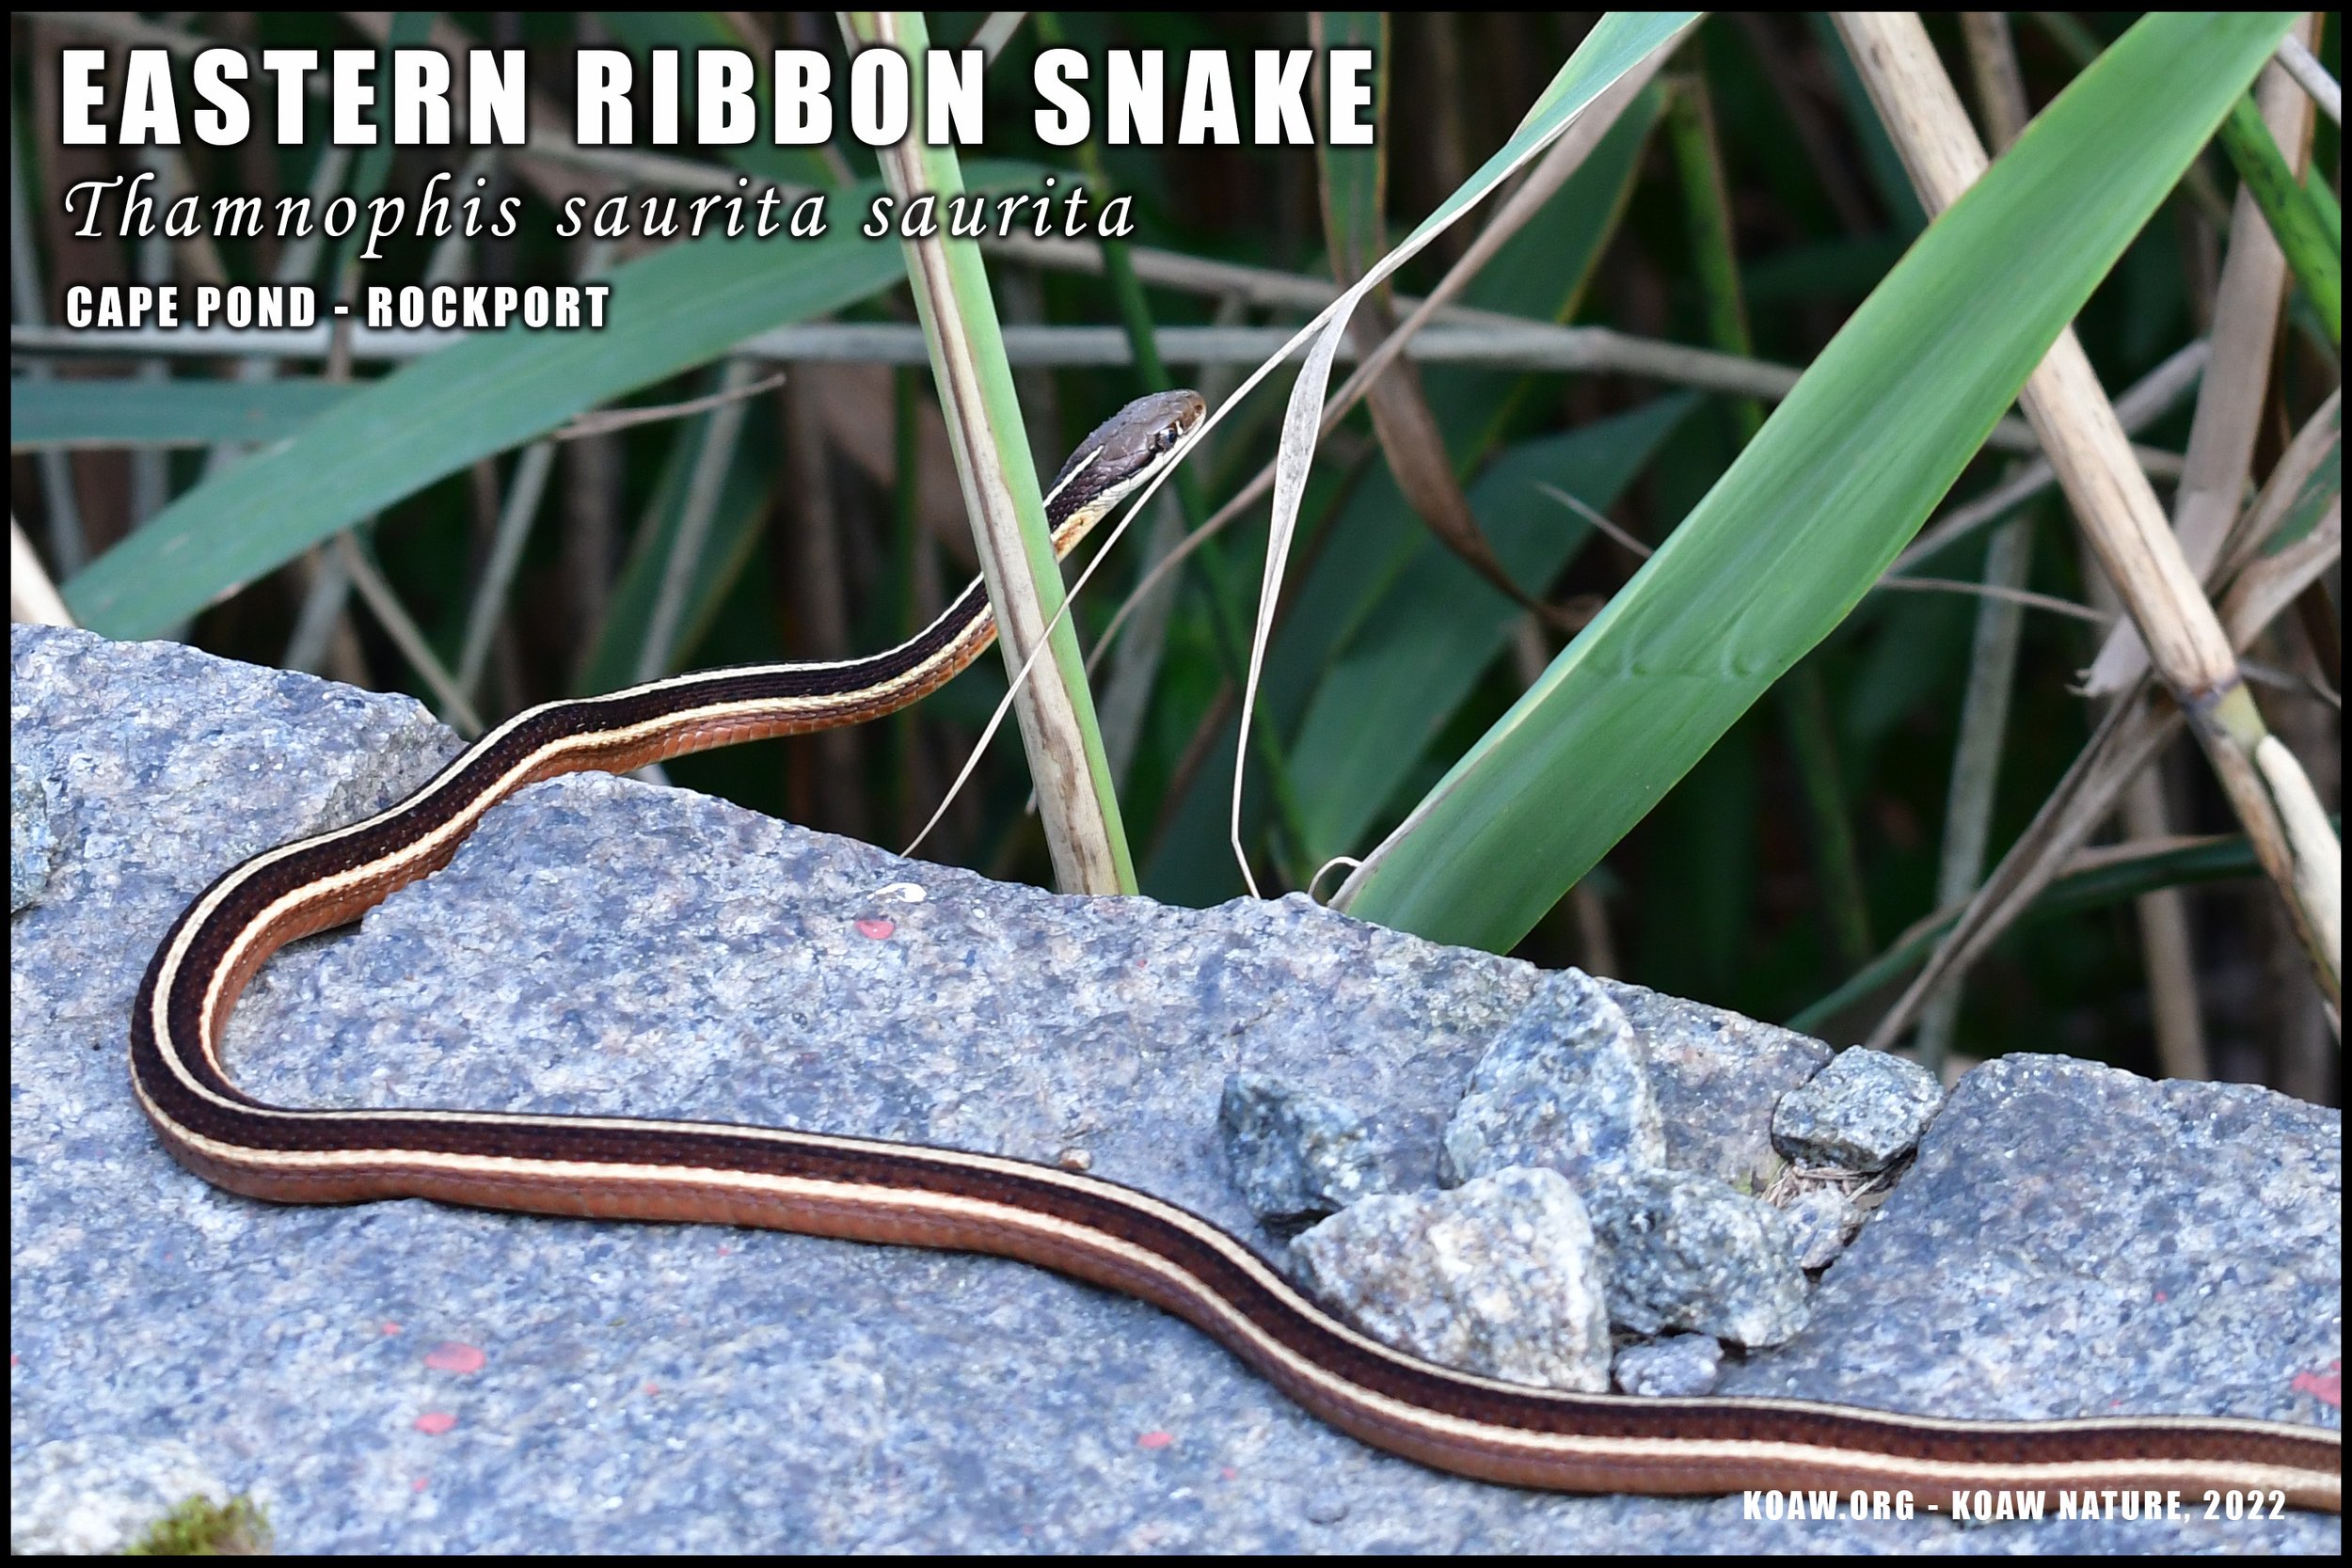 Eastern Ribbon Snake in Massachusetts